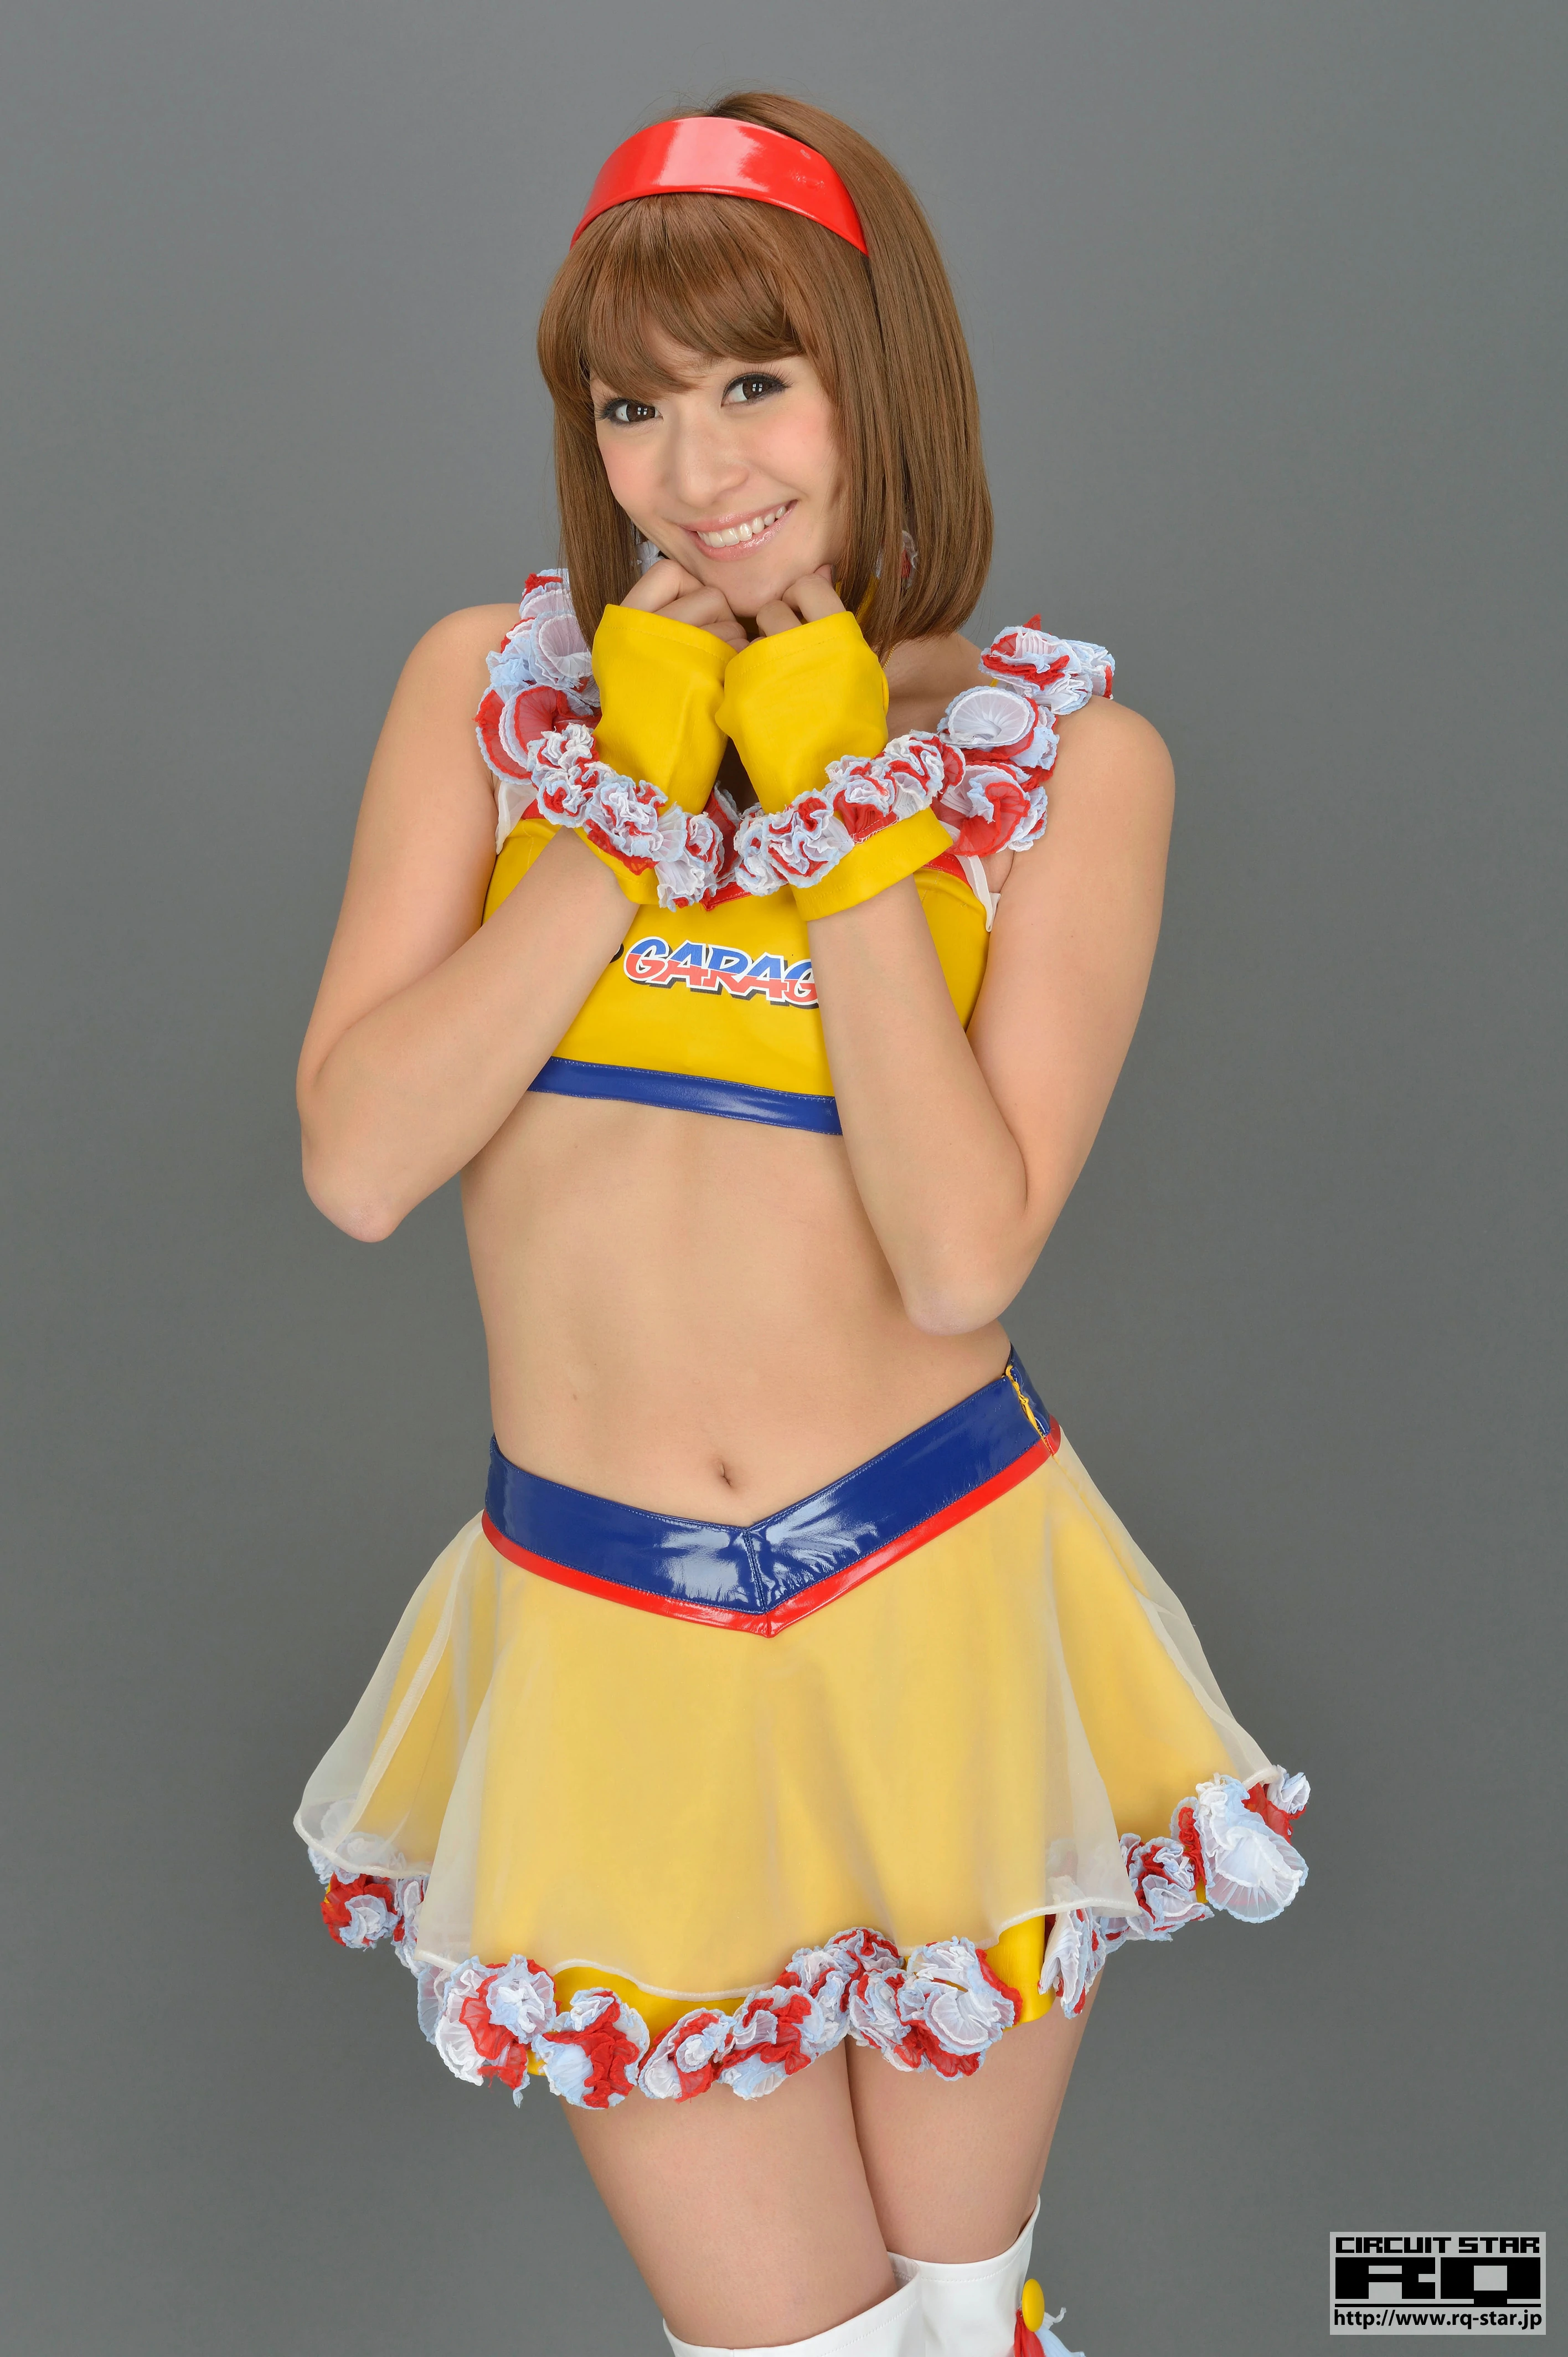 [RQ-STAR写真]NO.00733 日本赛车女郎 しばはらまい（柴原麻衣，Mai Shibahara）黄色制服加短裙性感写真集,015